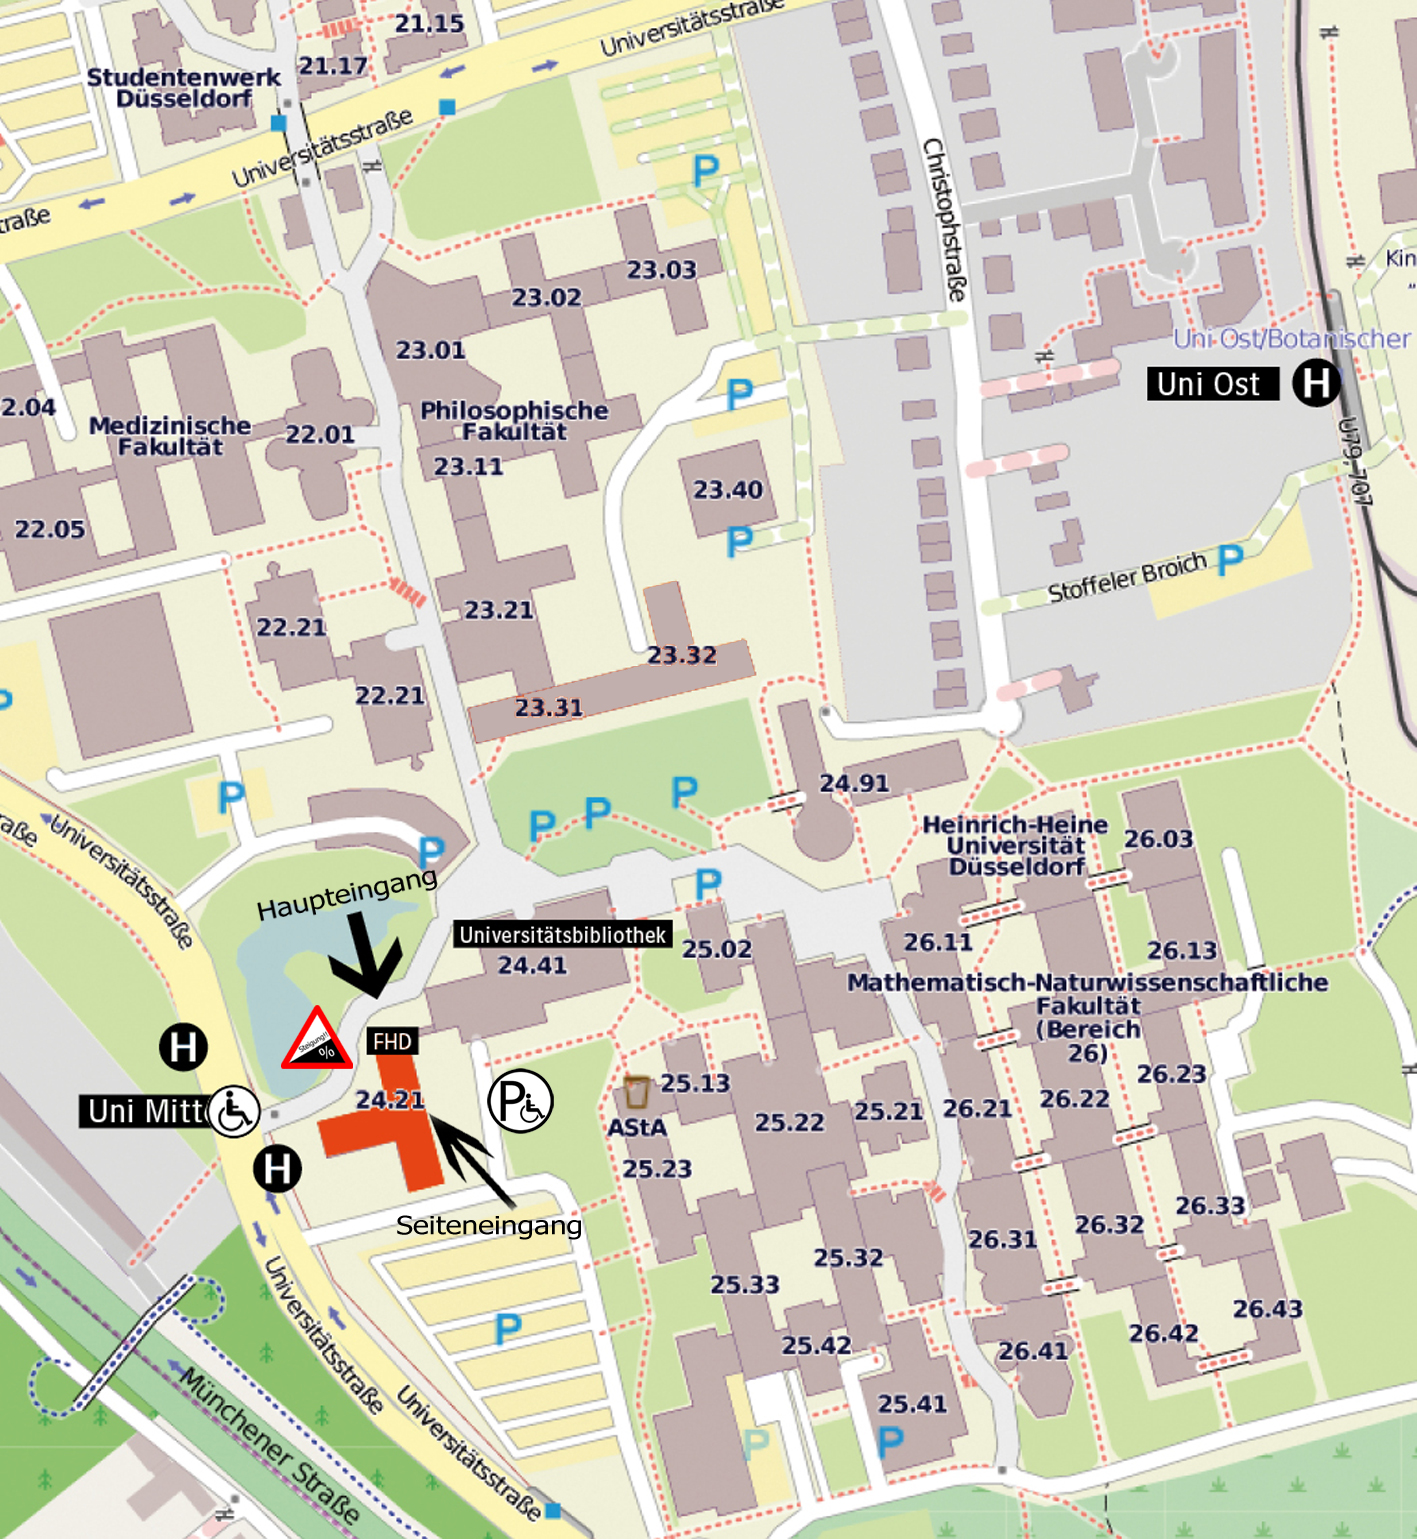 Das Bild zeigt eine Karte des Campus. Der Fachbereich 6 ist markiert und es gibt Hinweise zu den Bus-/U-Bahnhaltestellen, Parkplätzen und zur Barrierefreiheit.